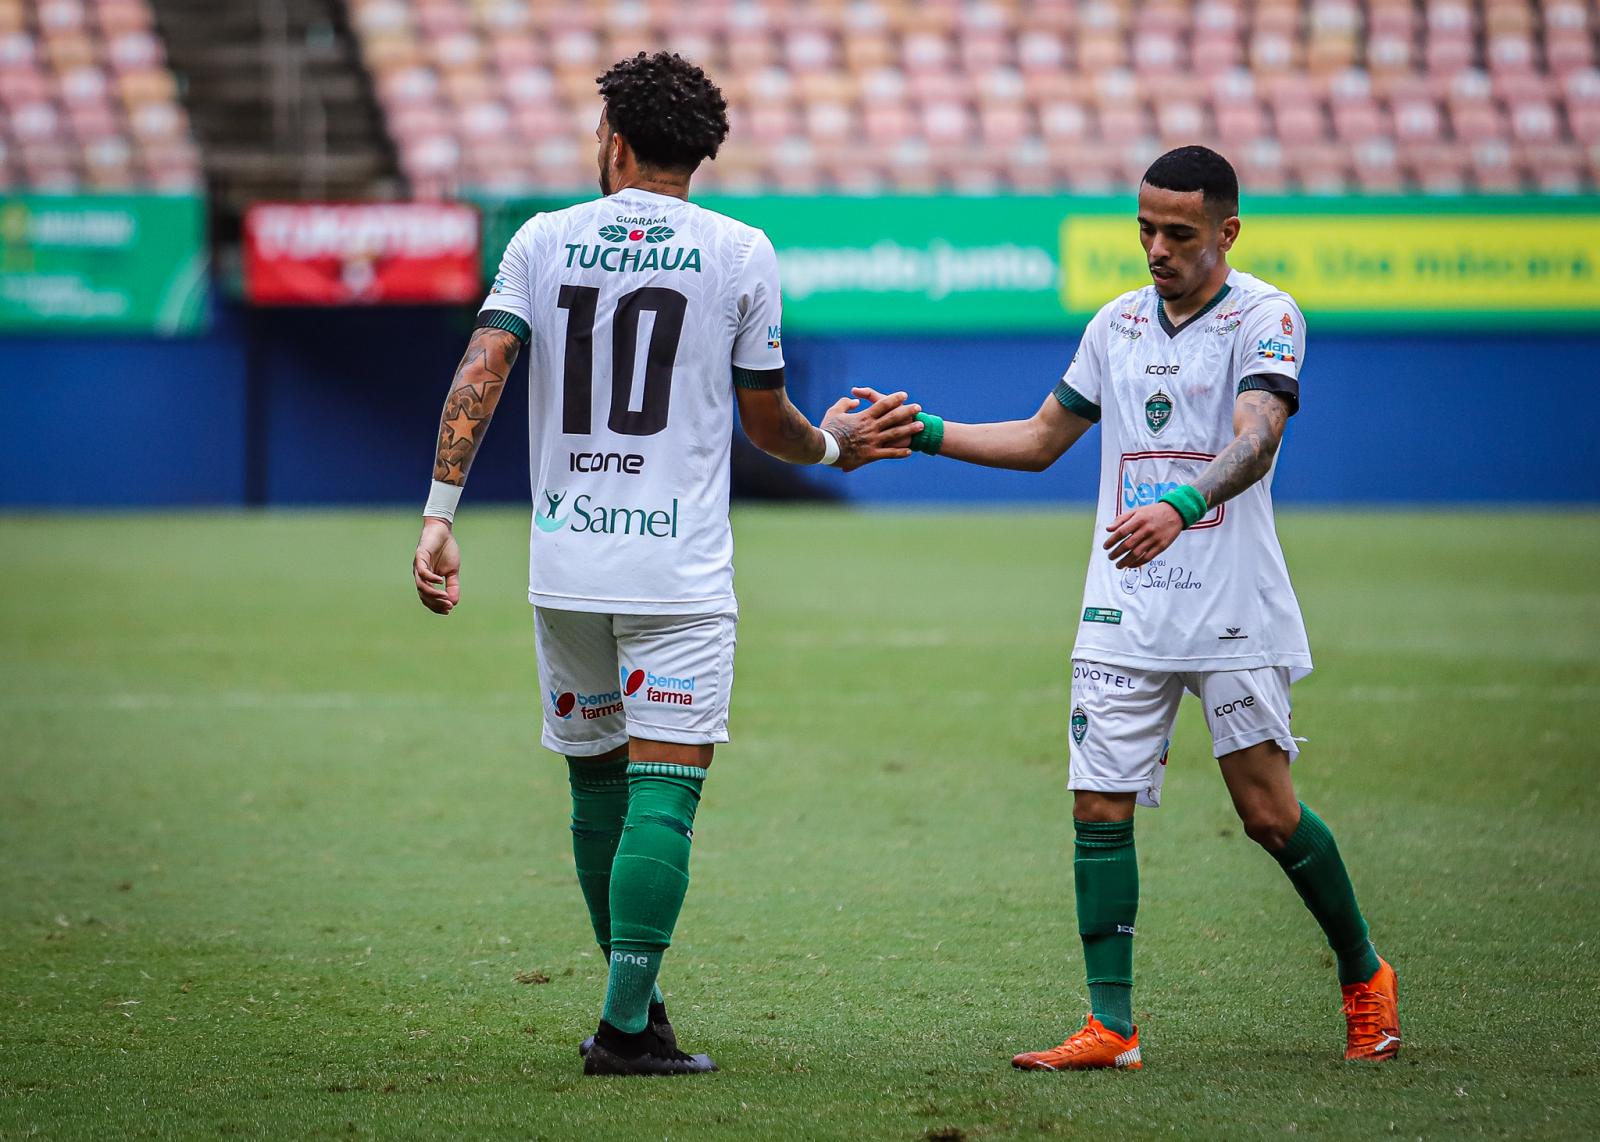 Serviço de jogo | Manaus vs JC| Oitava rodada Barezão 2022